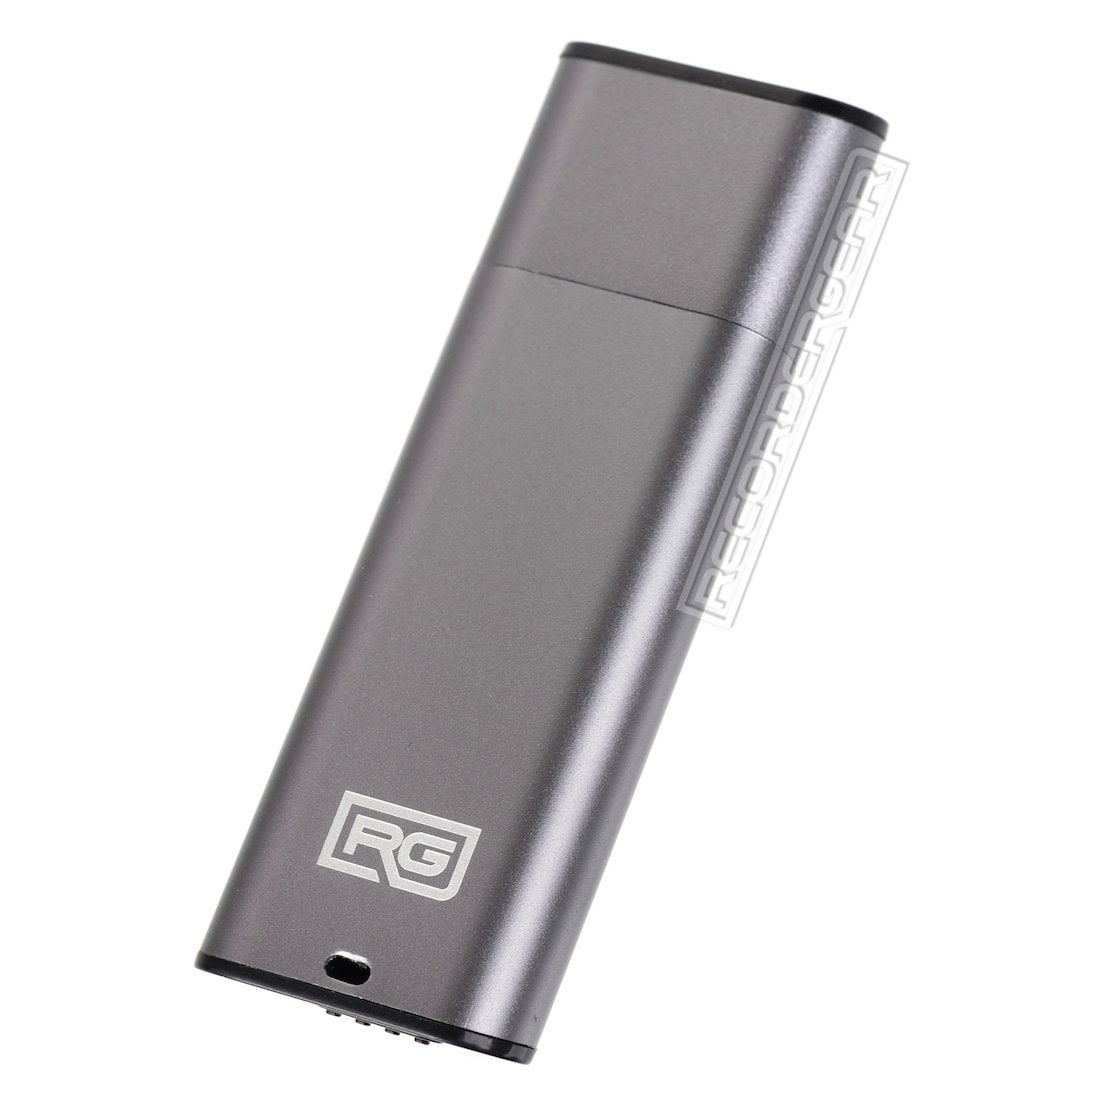 RecorderGear FD10 USB Drive Voice Recorder Small Spy Recording Silver Option 